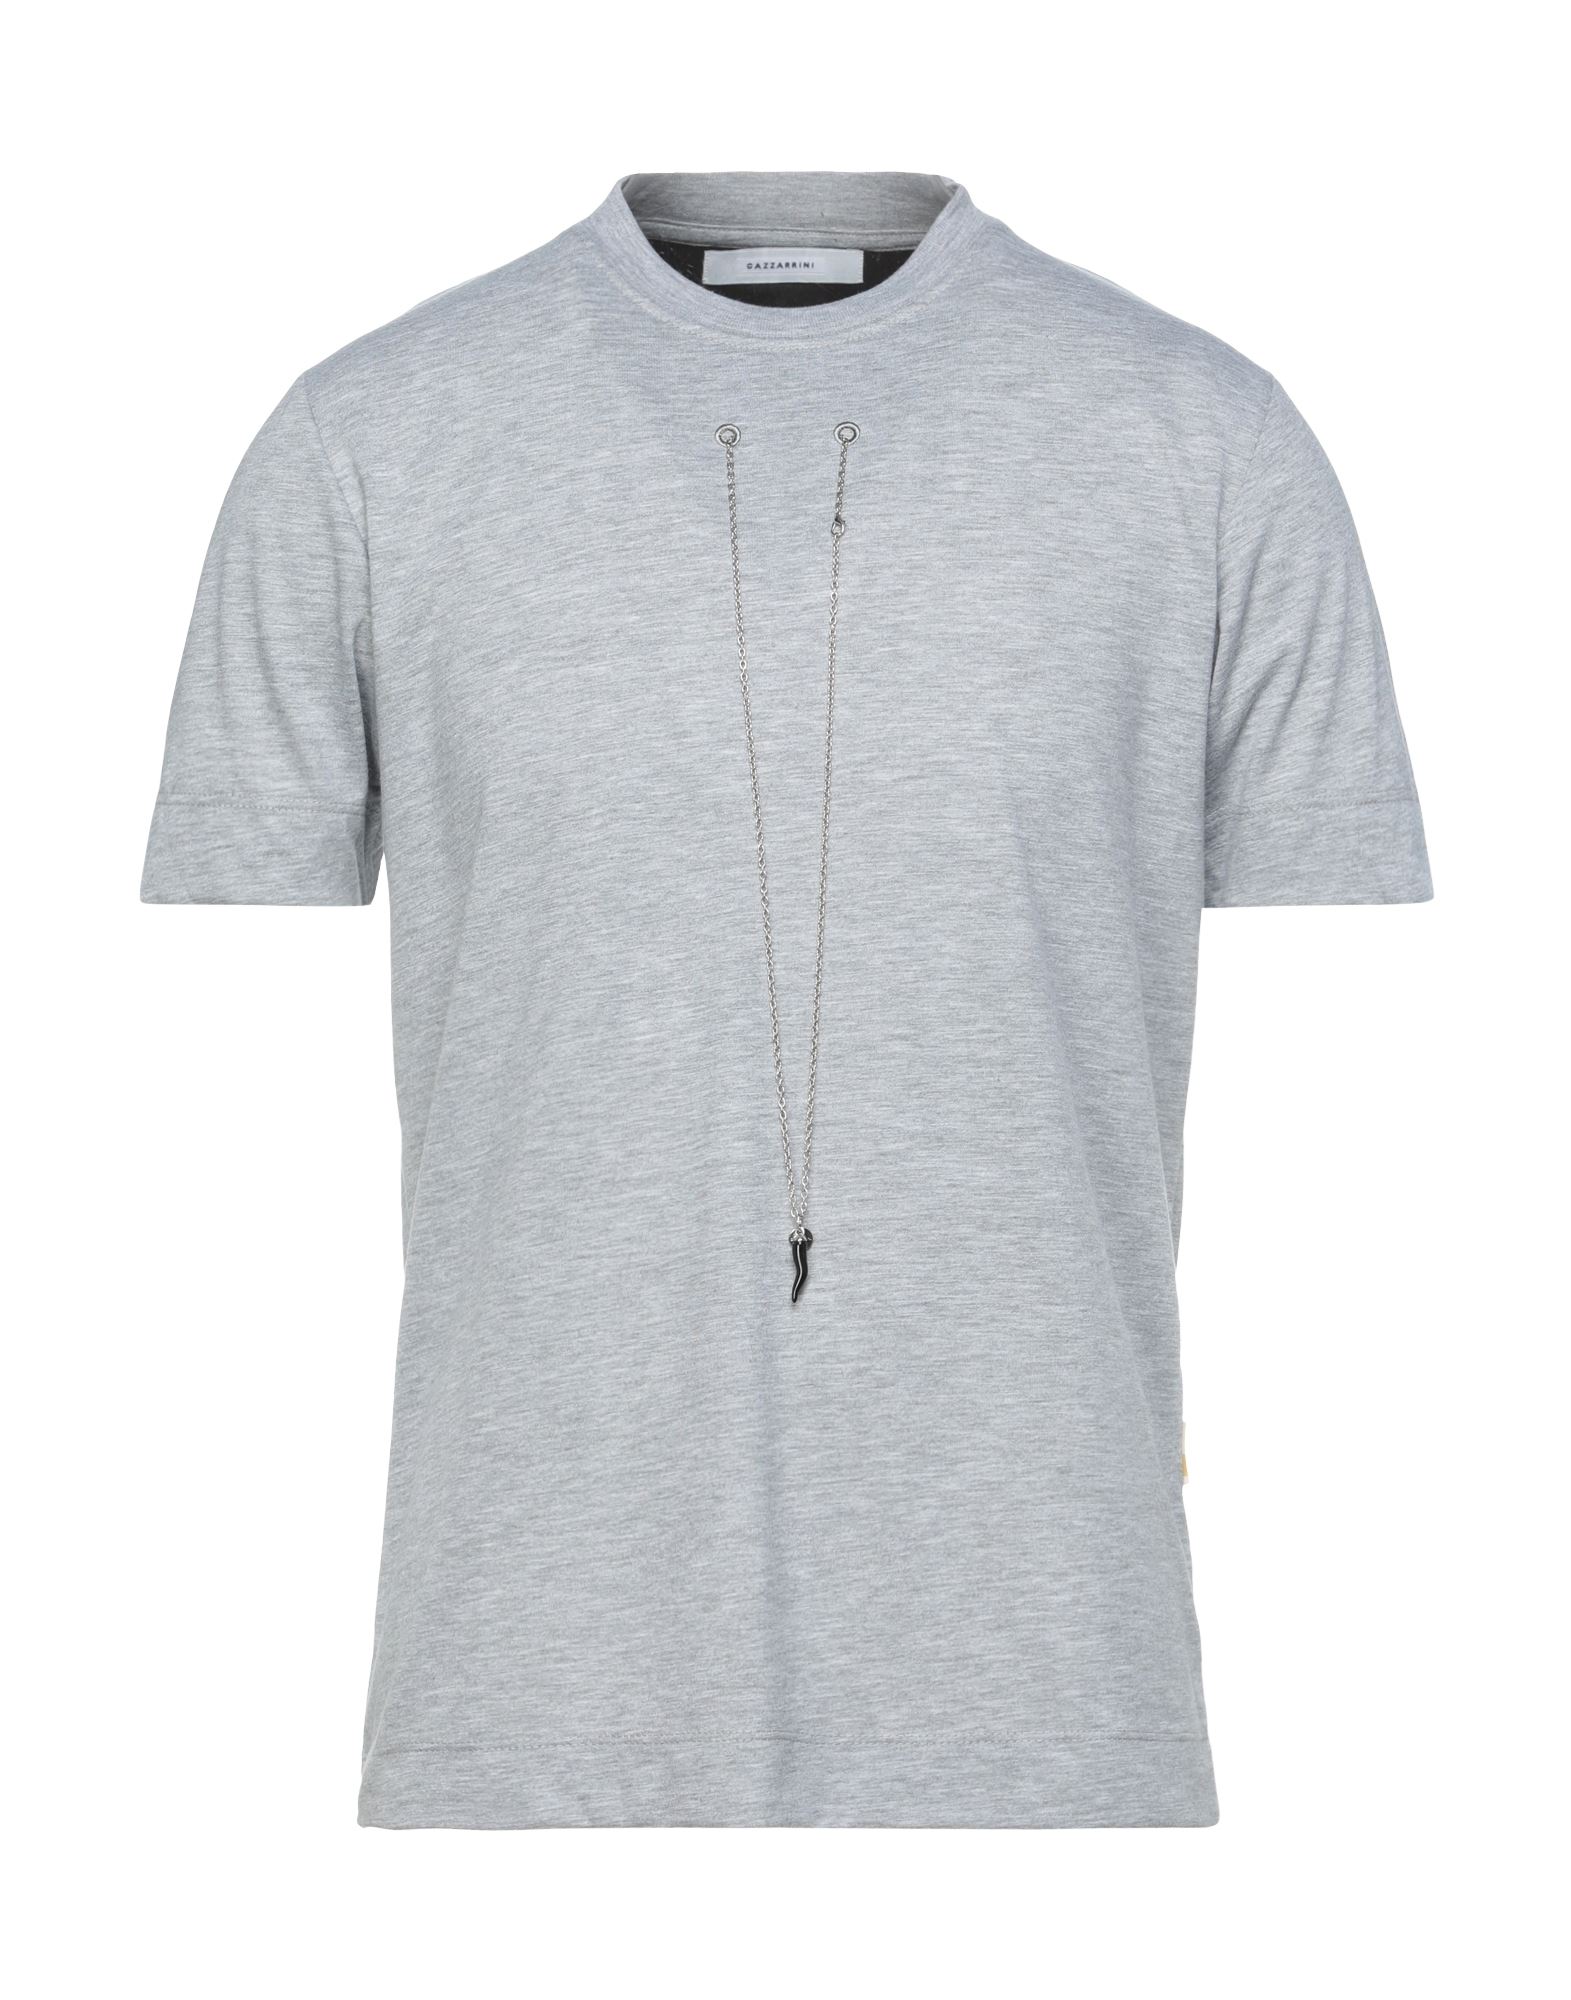 Gazzarrini T-shirts In Light Grey